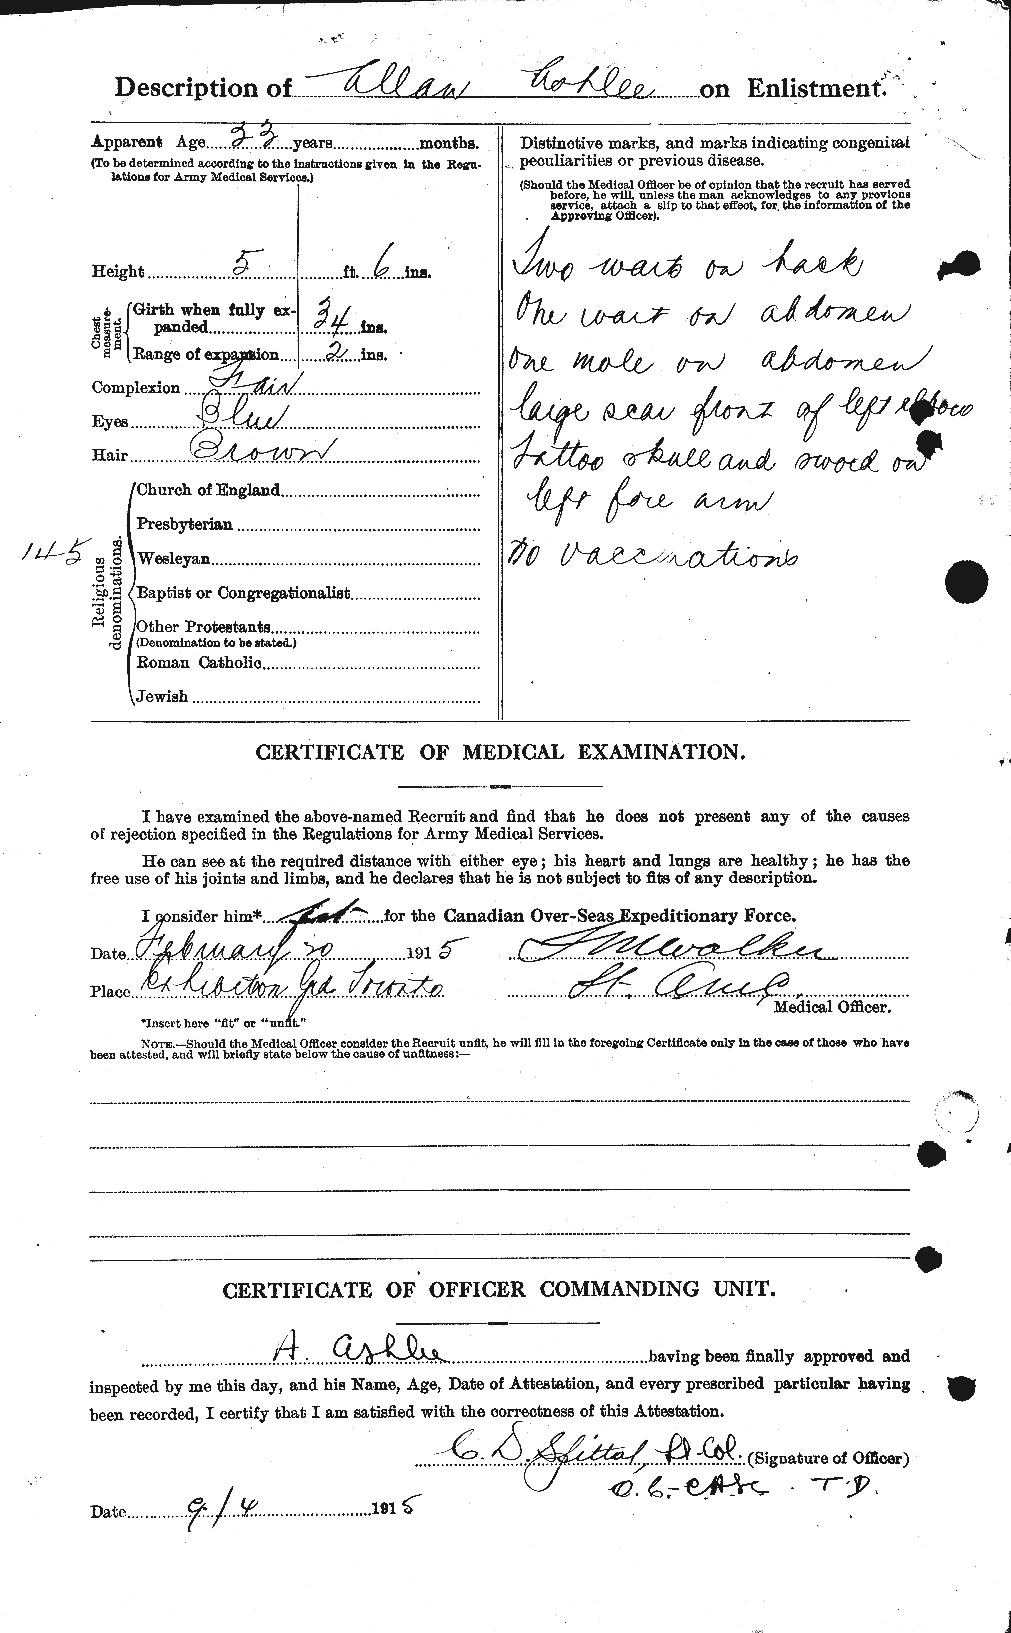 Dossiers du Personnel de la Première Guerre mondiale - CEC 223228b